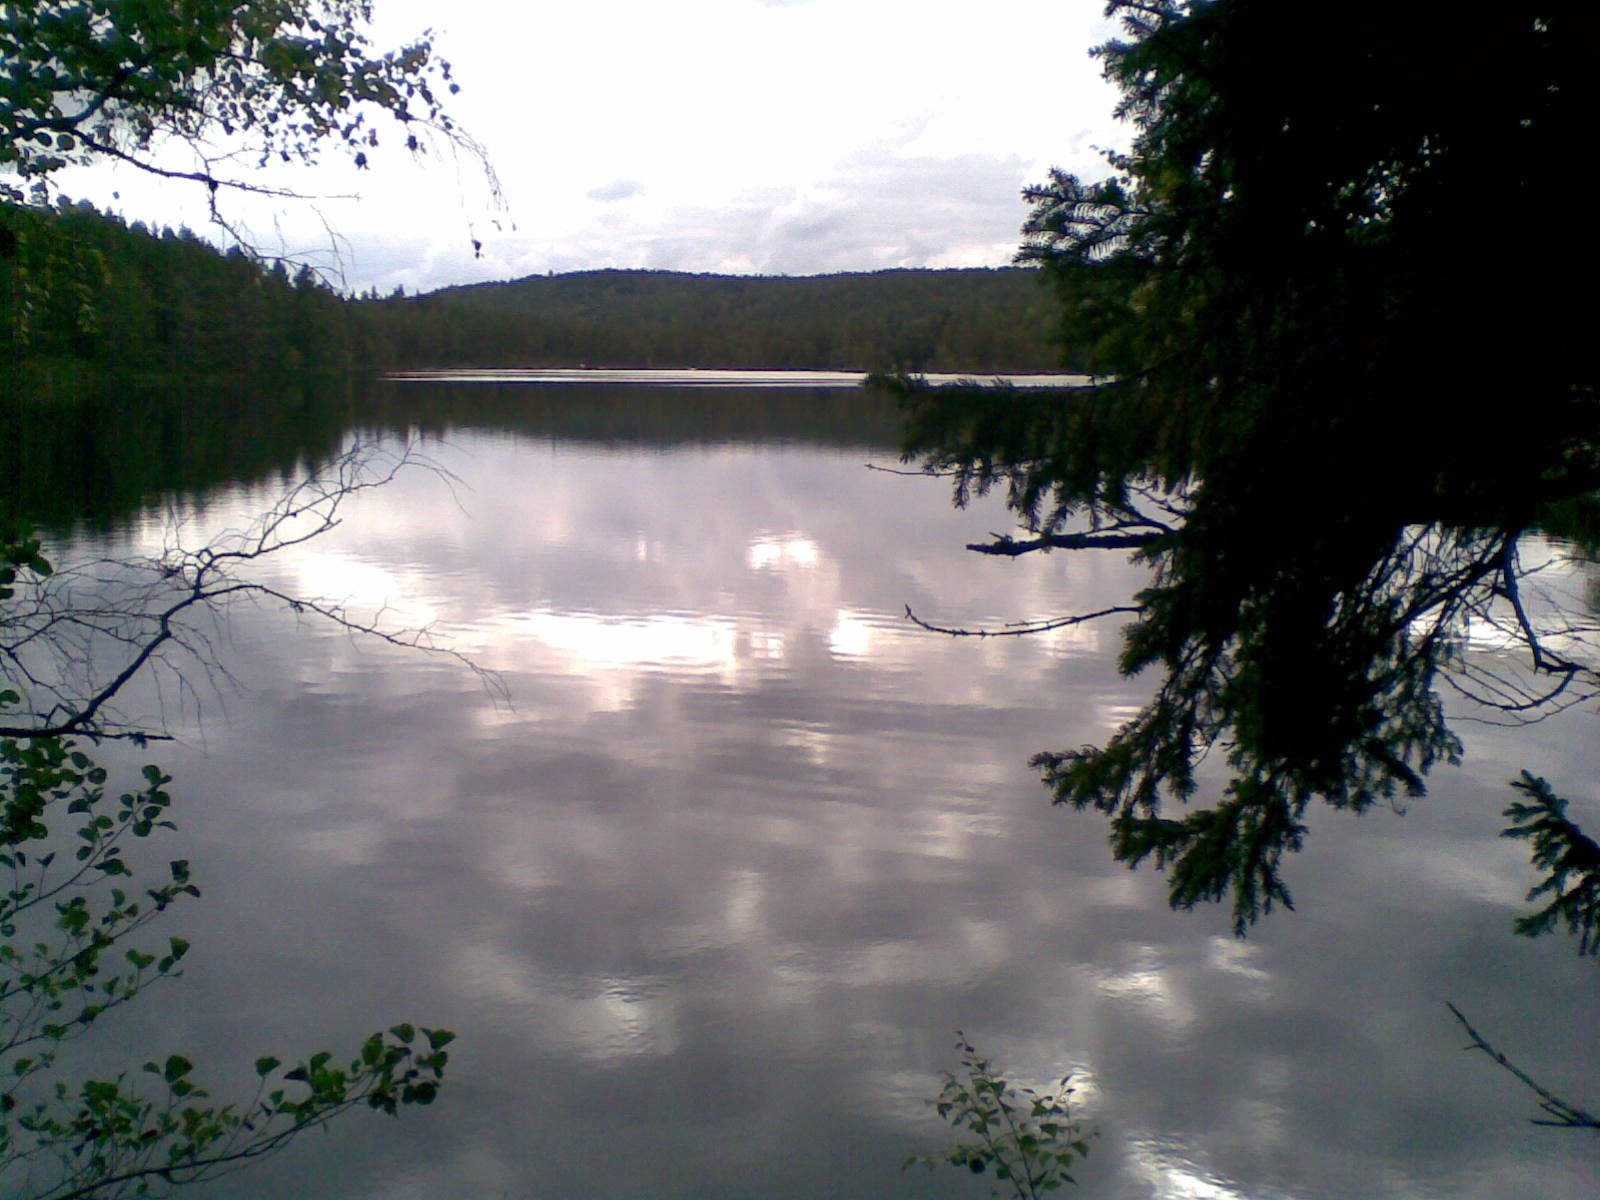 September at the lake 3